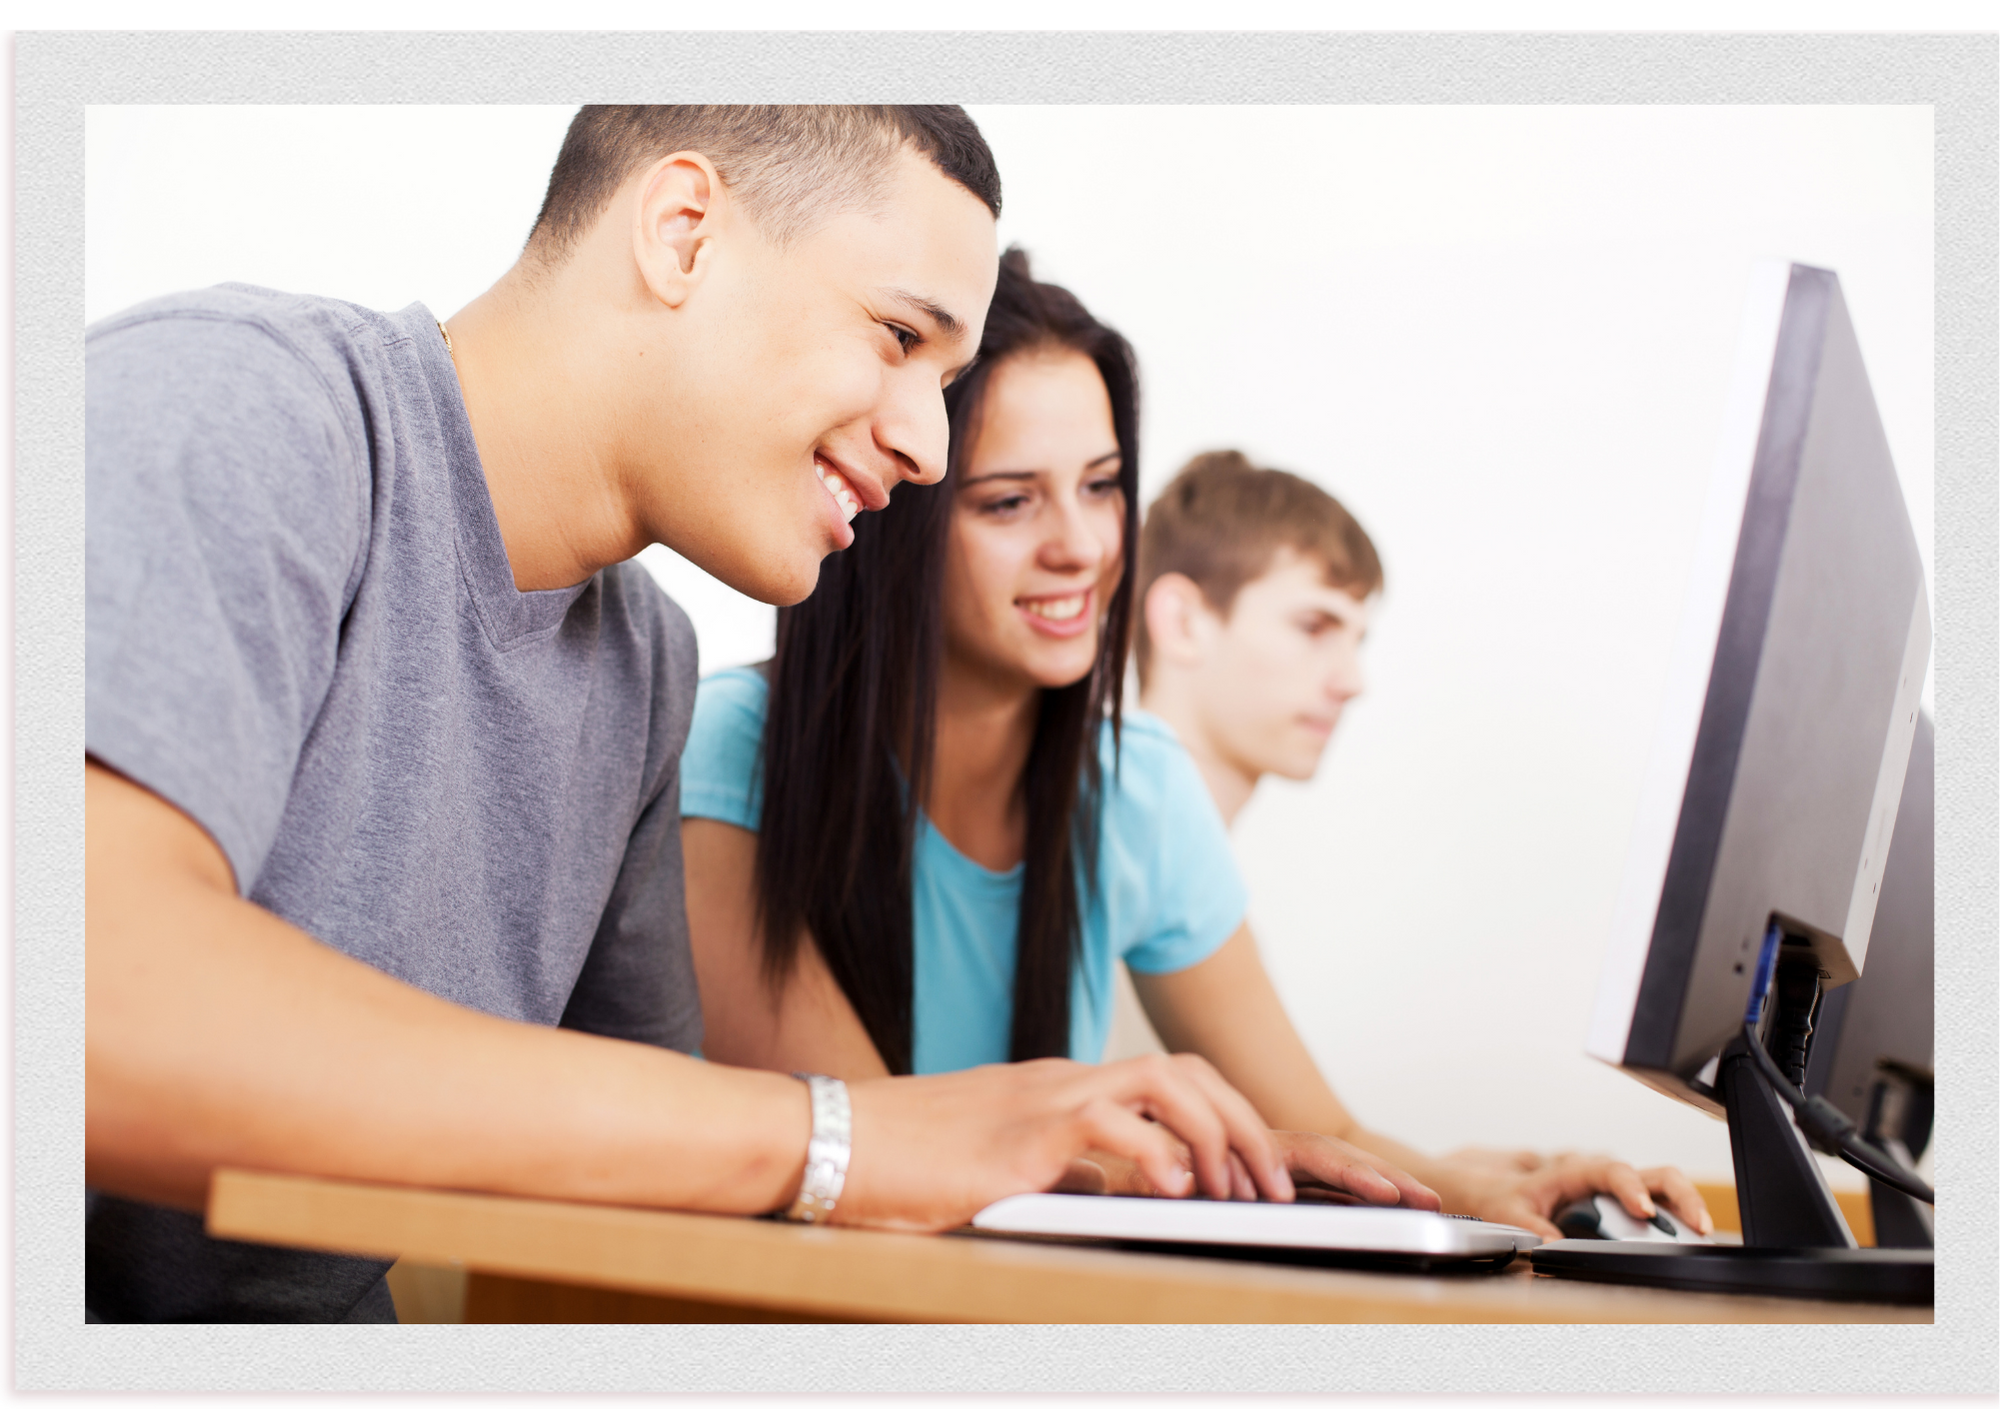 Des adolescents travaillent devant des ordinateurs